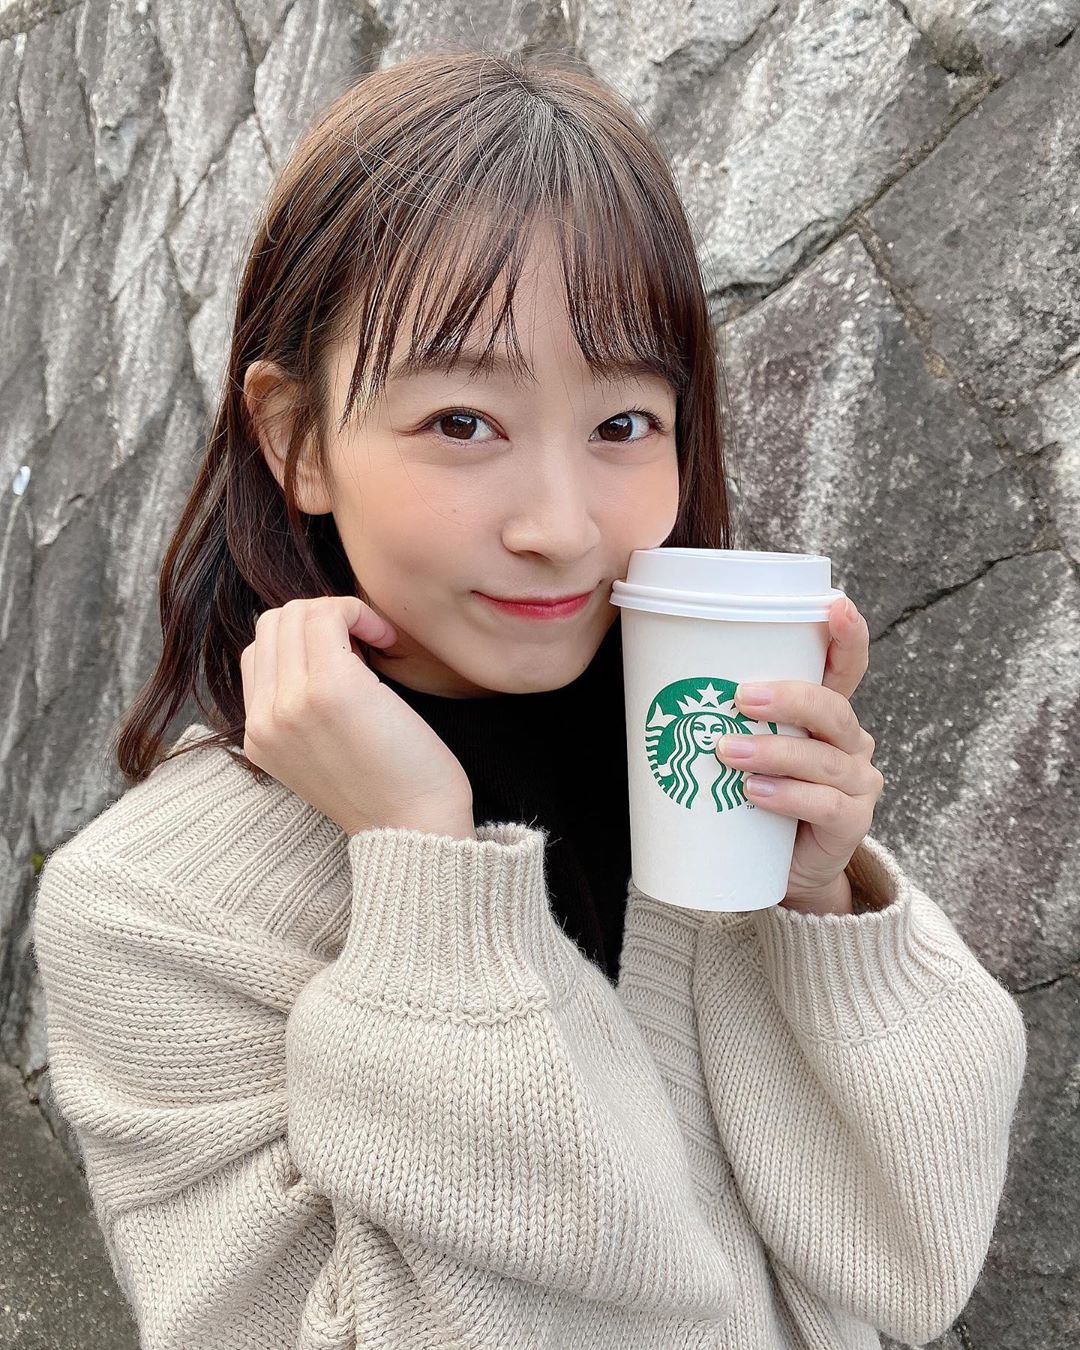 太田奈緒は「AKB48 Team 8 全国一斉オーディション」の京都府代表